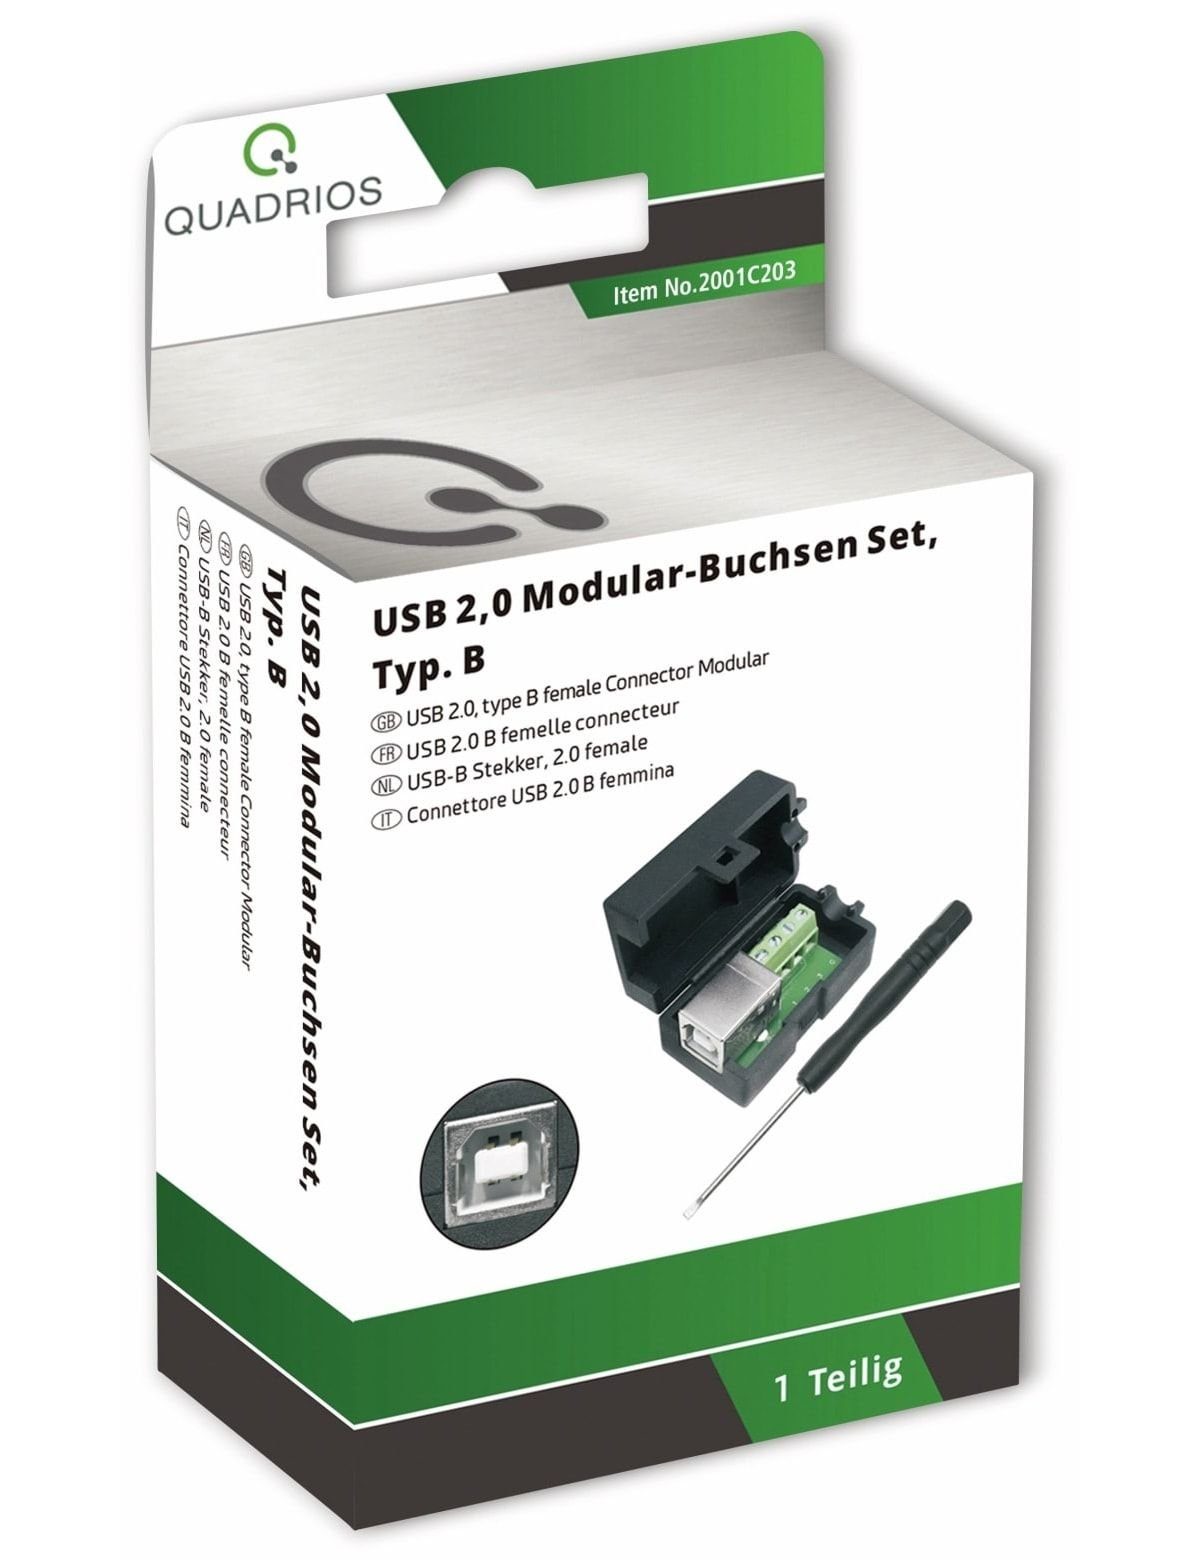 - QUADRIOS, Quadrios 2001C203, USB USB-Modular-Set, Klemmen 2.0